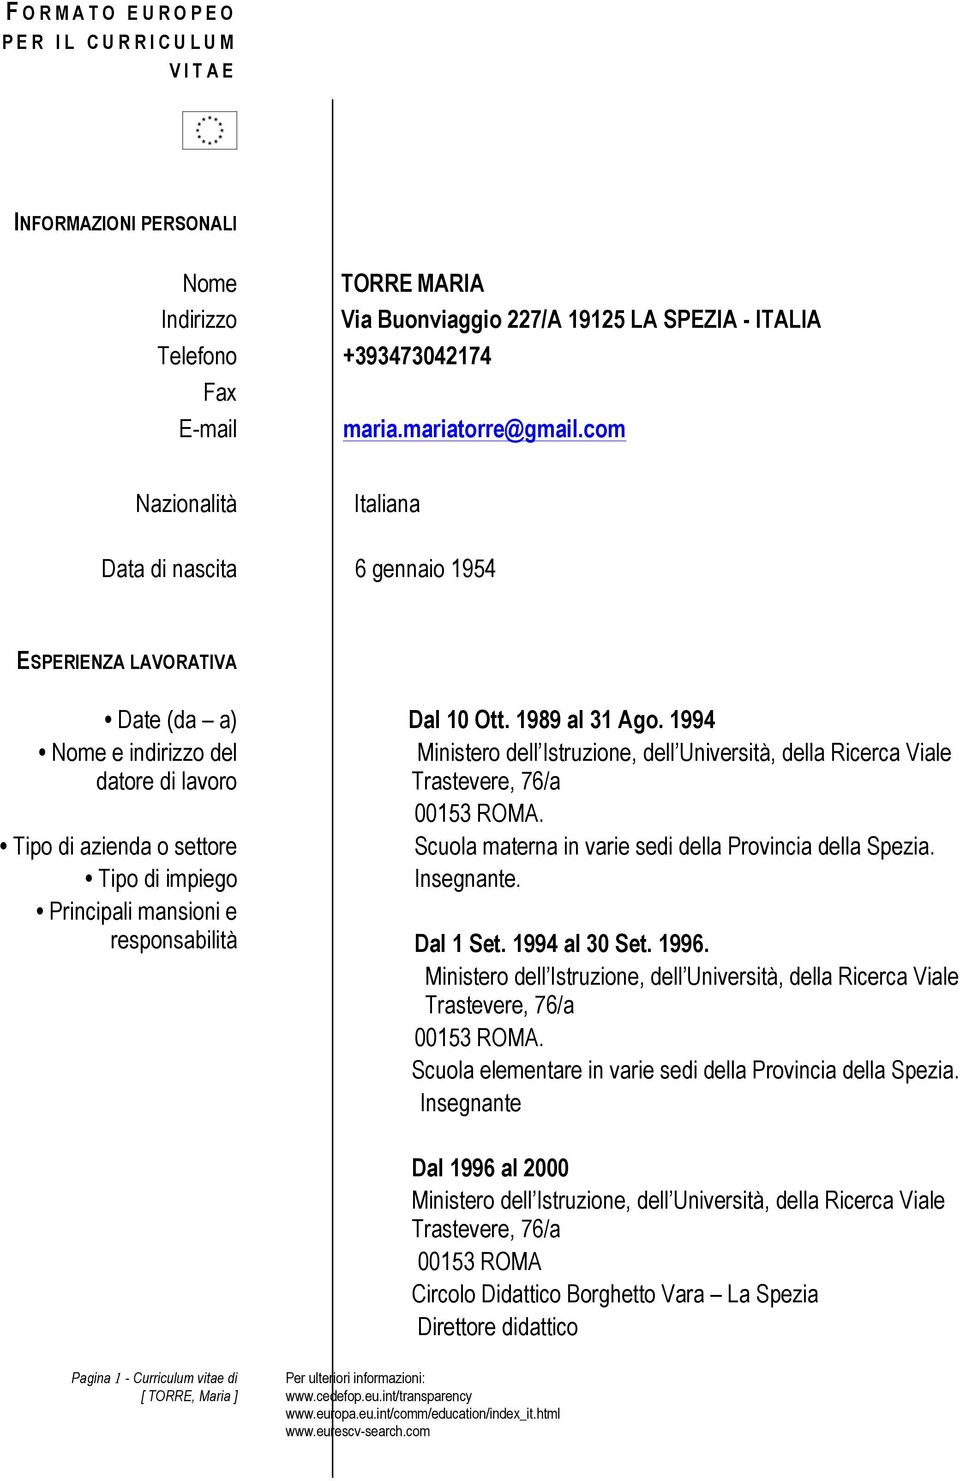 1994 Nome e indirizzo del datore di lavoro Ministero dell Istruzione, dell Università, della Ricerca Viale Trastevere, 76/a 00153 ROMA. Scuola materna in varie sedi della Provincia della Spezia.